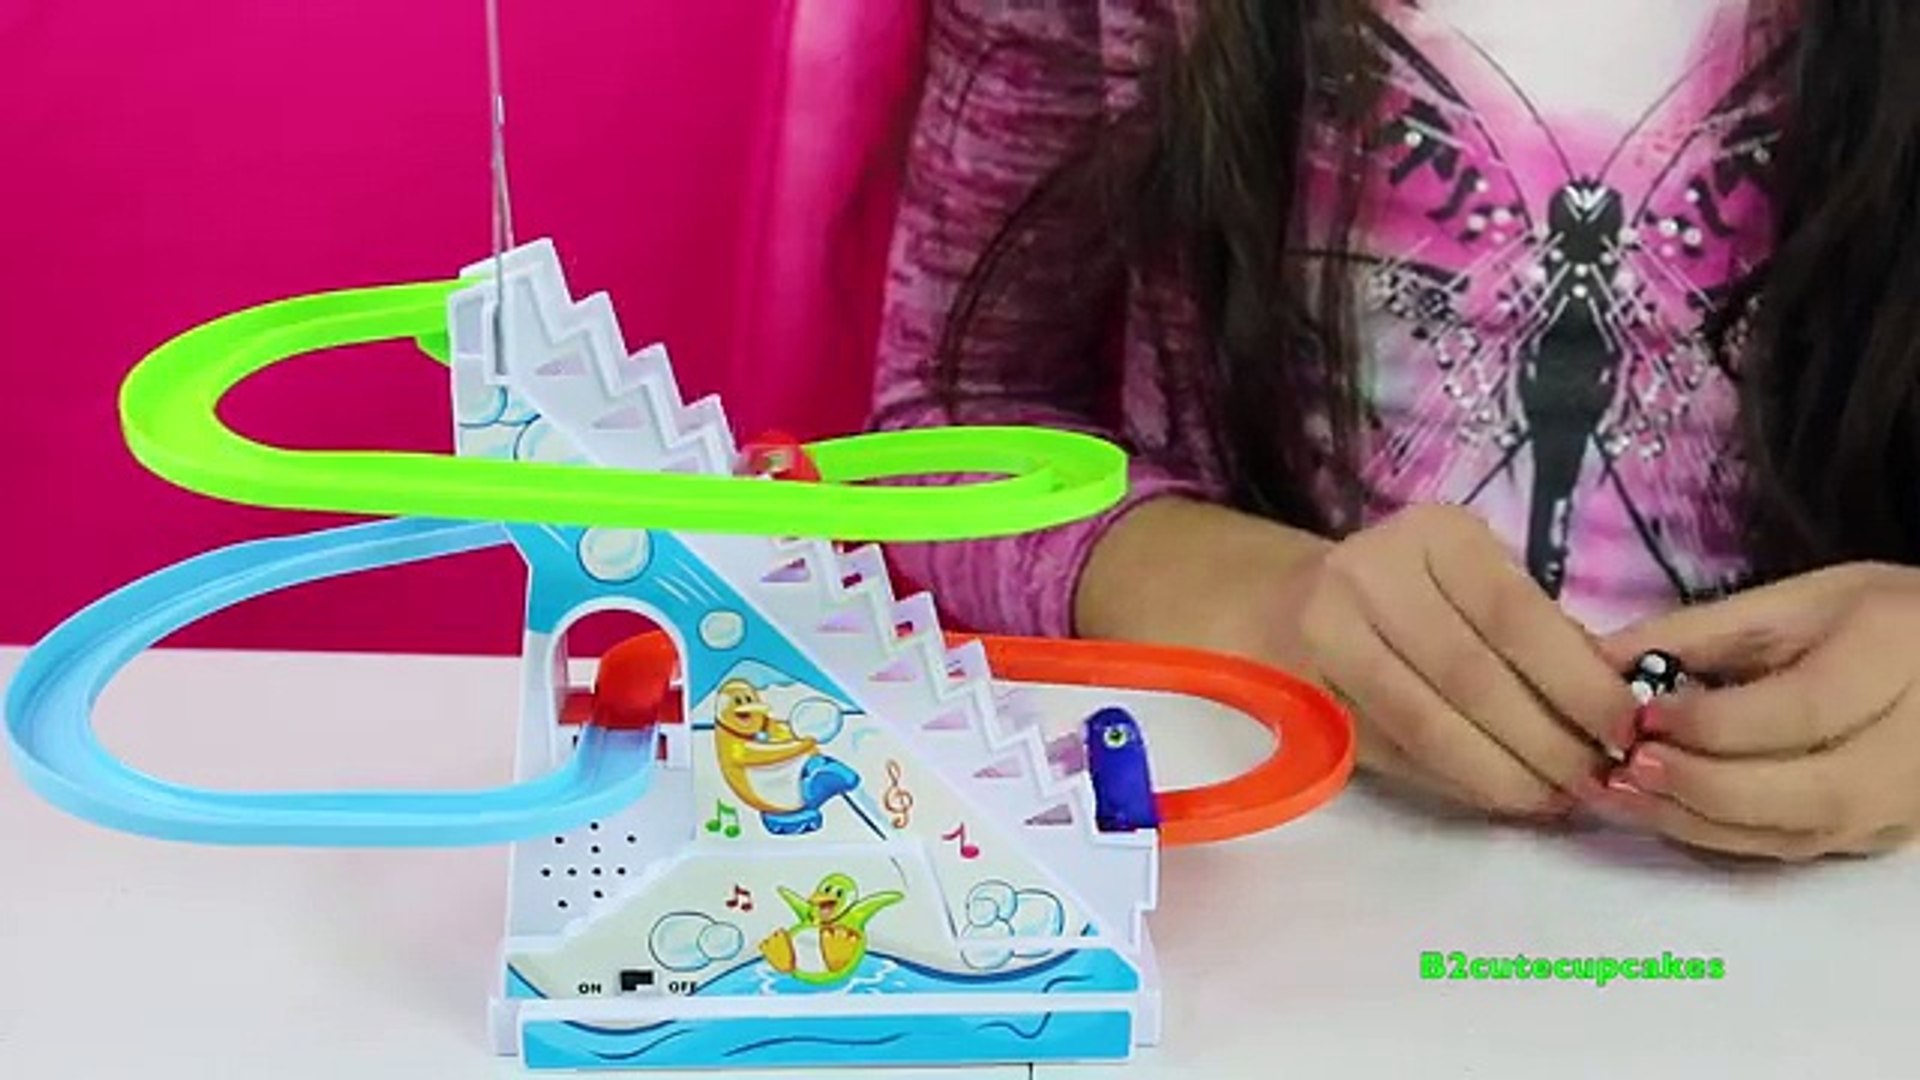 Penguin Race Toys!! Playful Penguins Circuit|B2cutecupcakes HD